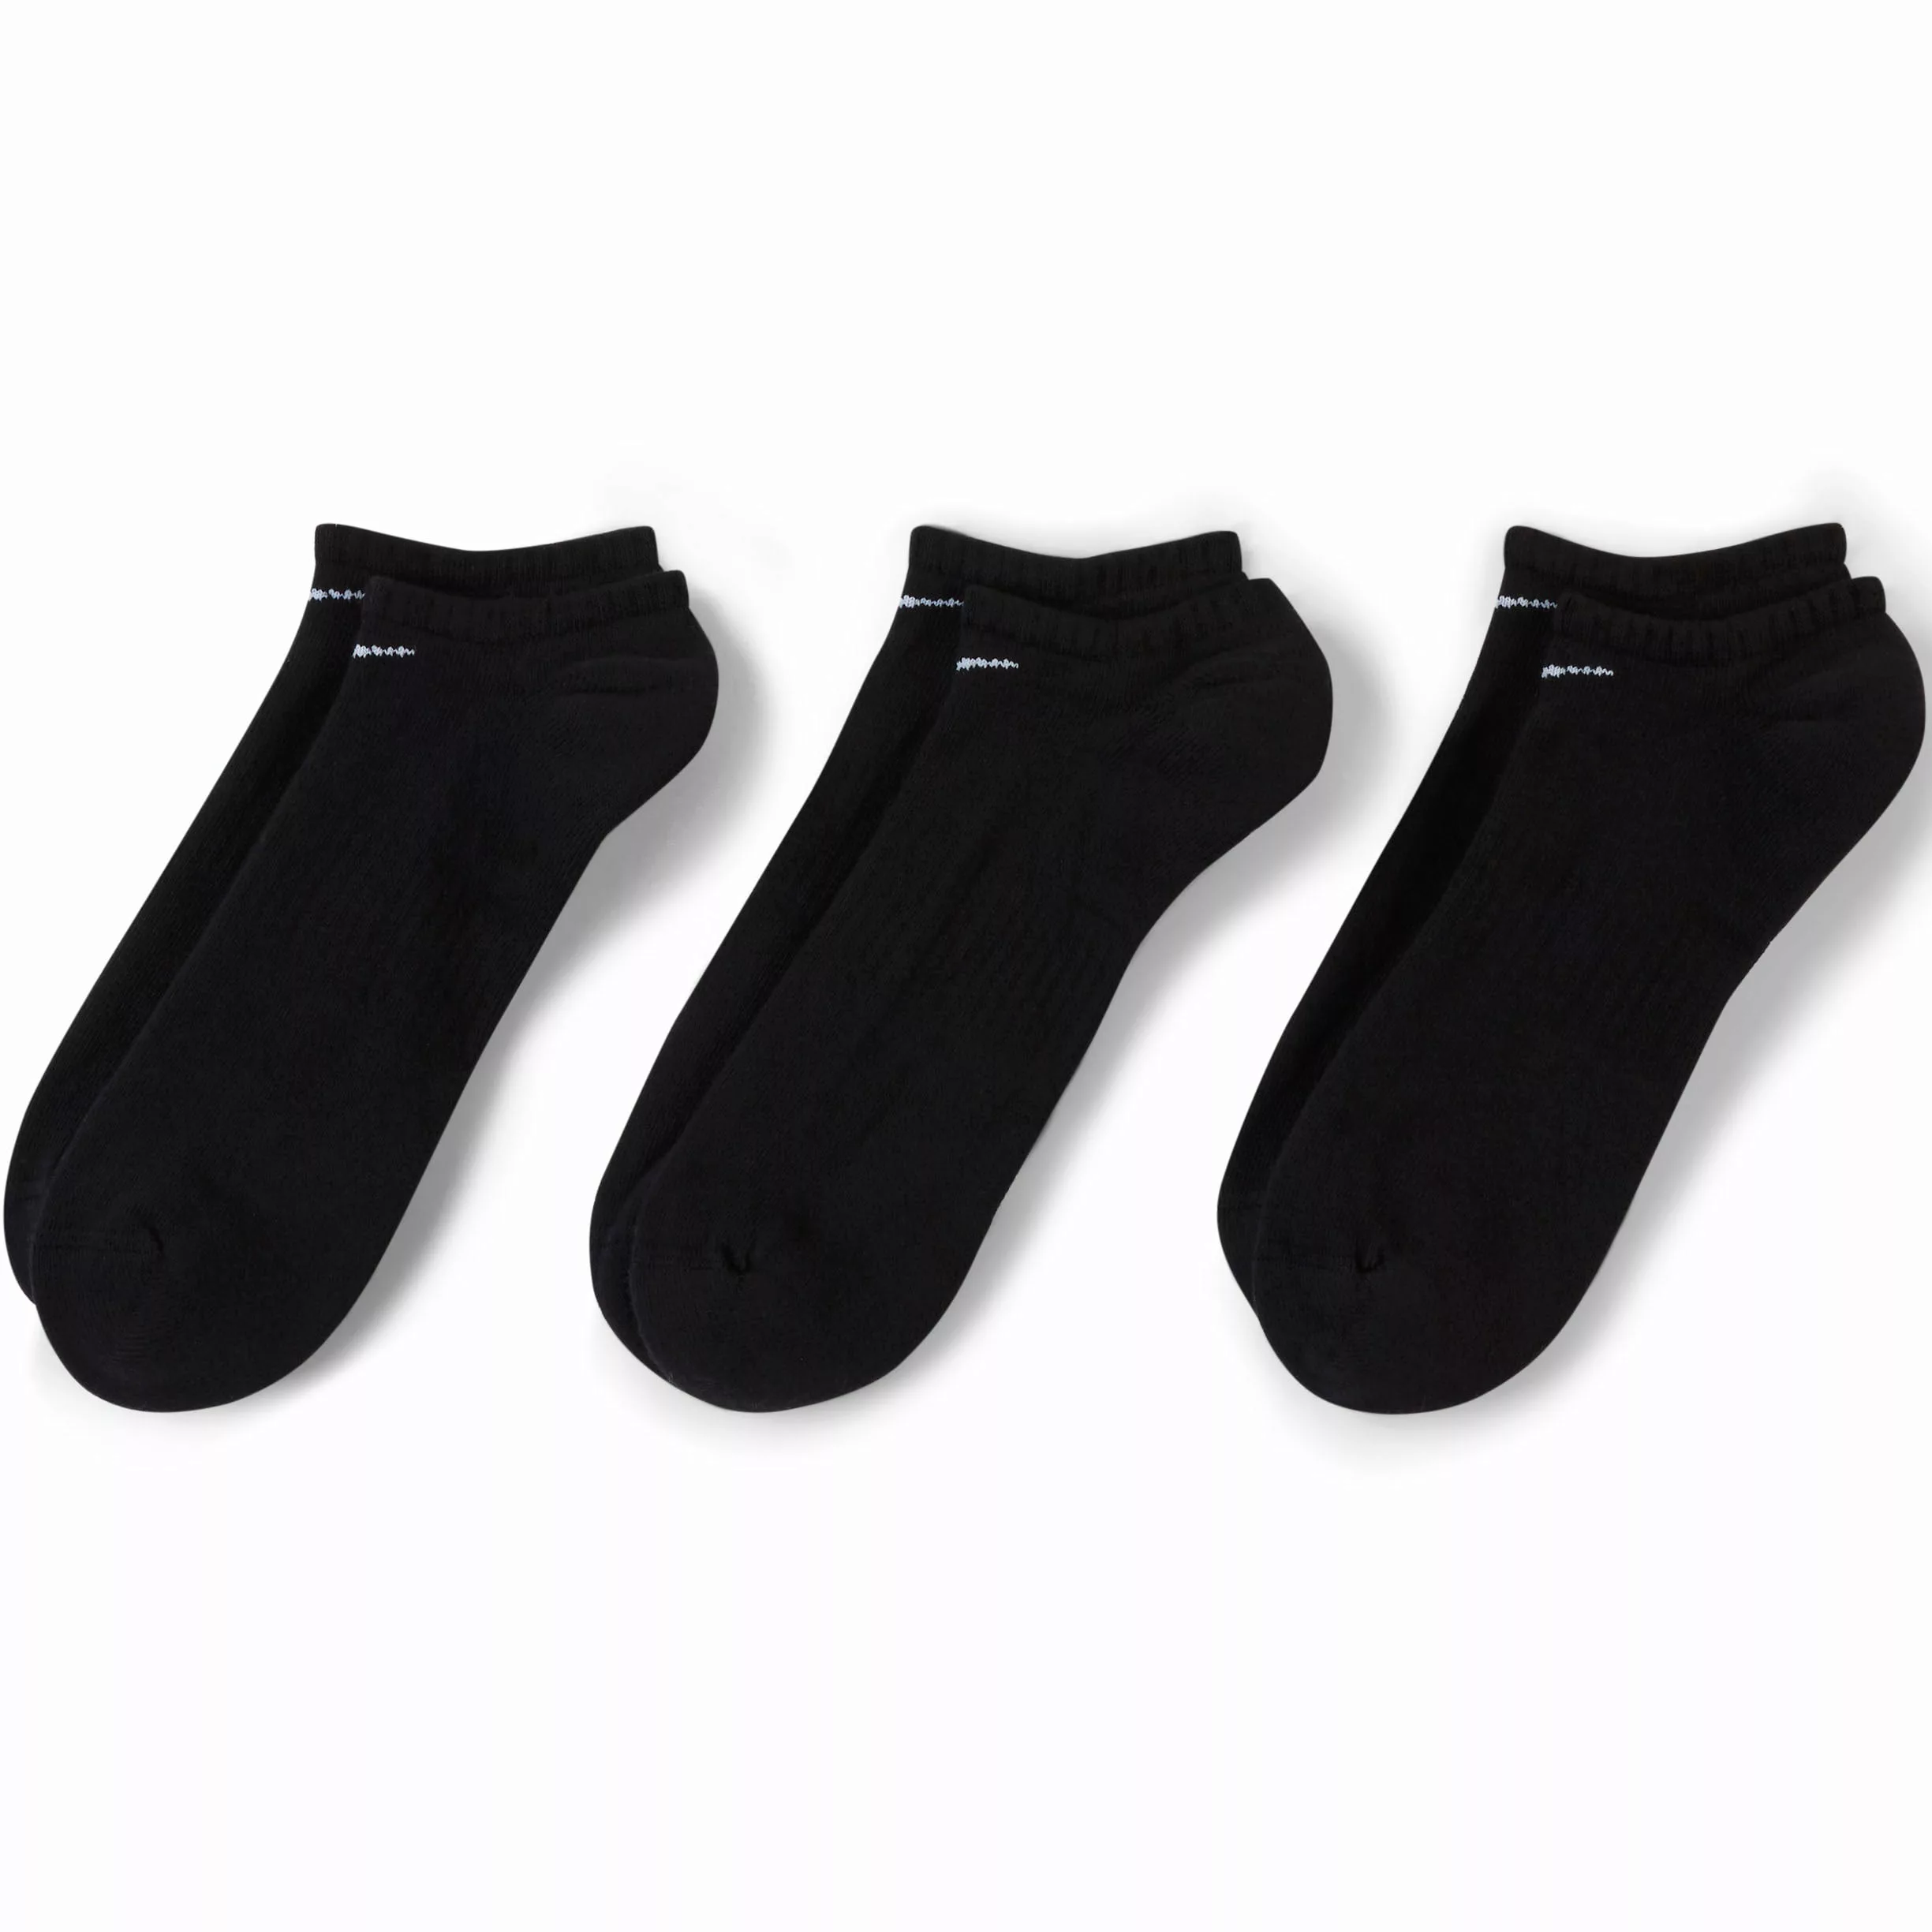 Nike Everyday Cushion No Show Socken 3 Paare EU 38-42 Black / White günstig online kaufen